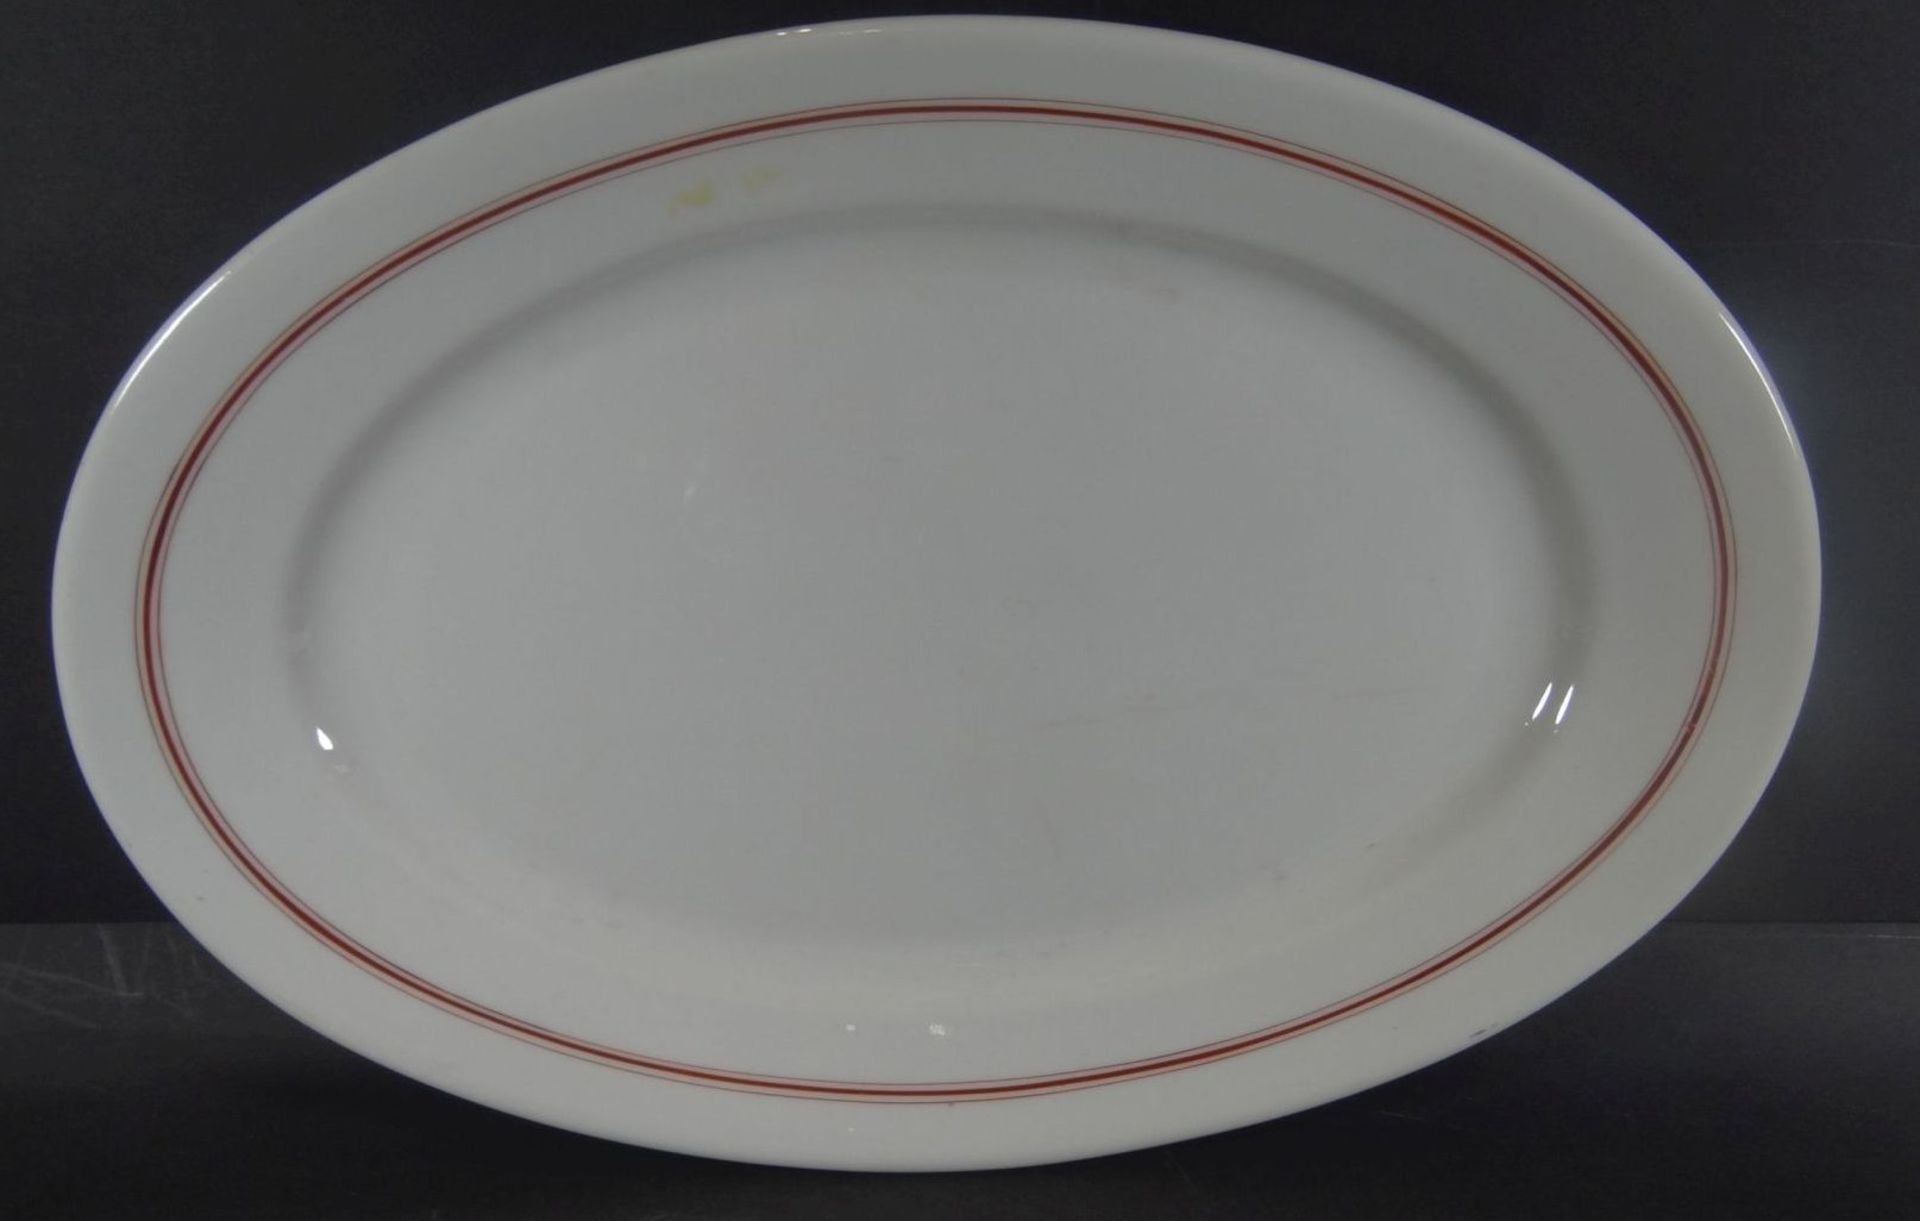 ovale Platte und kl. Teller, Marinegschirr, KPM, dat. 1940/42, roter Rand, 40x25 cm und D-20 cm - Bild 3 aus 5